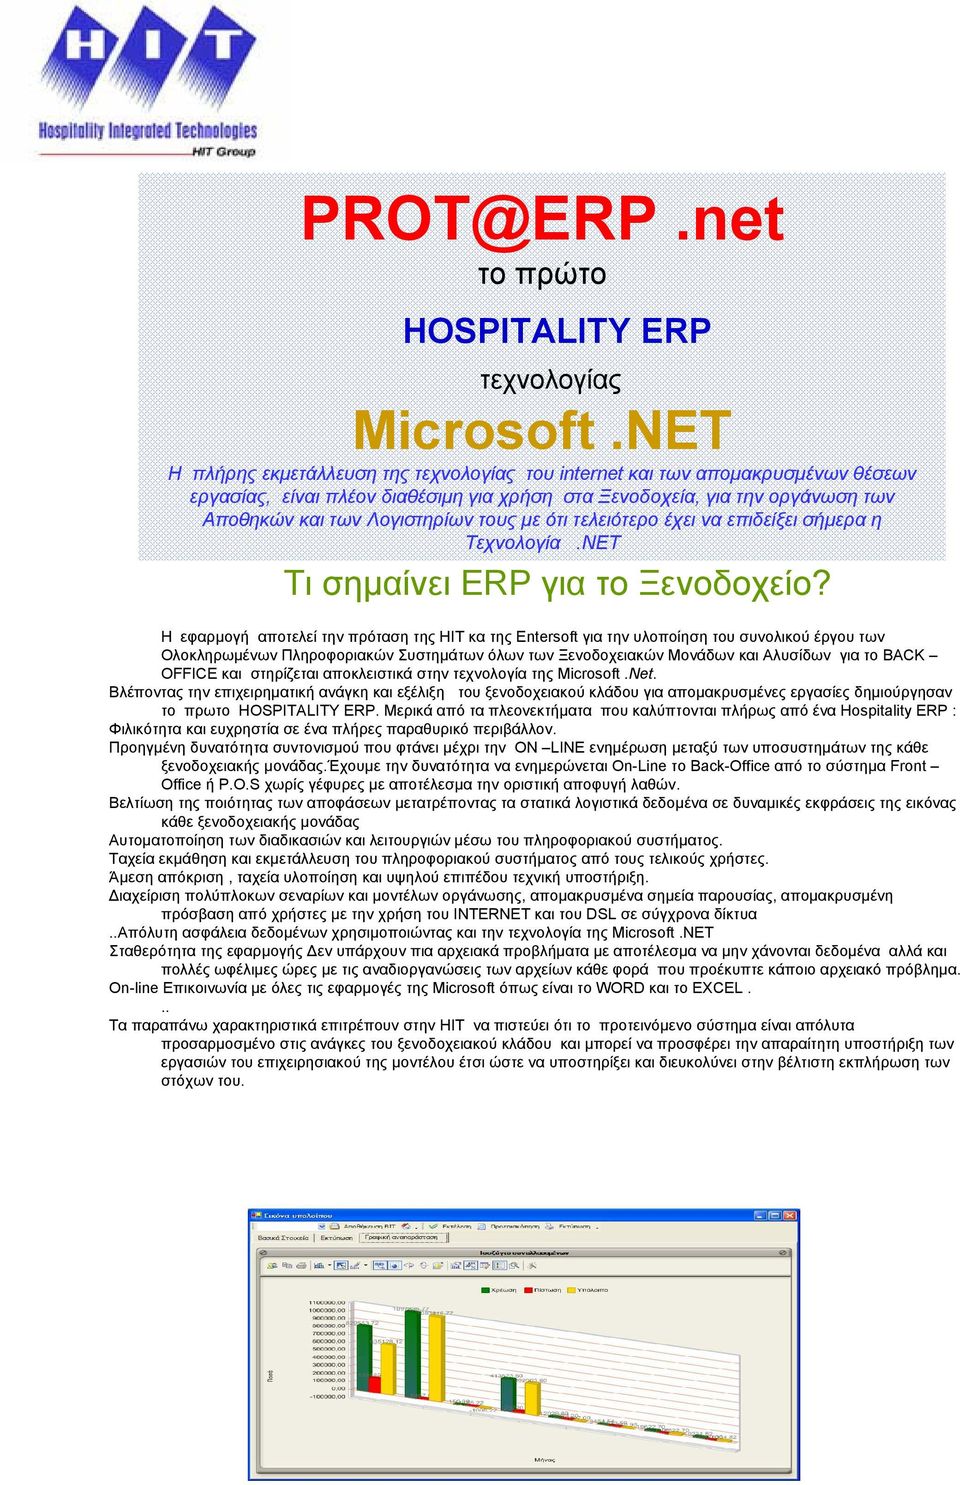 µε ότι τελειότερο έχει να επιδείξει σήµερα η Τεχνολογία.NET Τι σηµαίνει ERP για το Ξενοδοχείο?